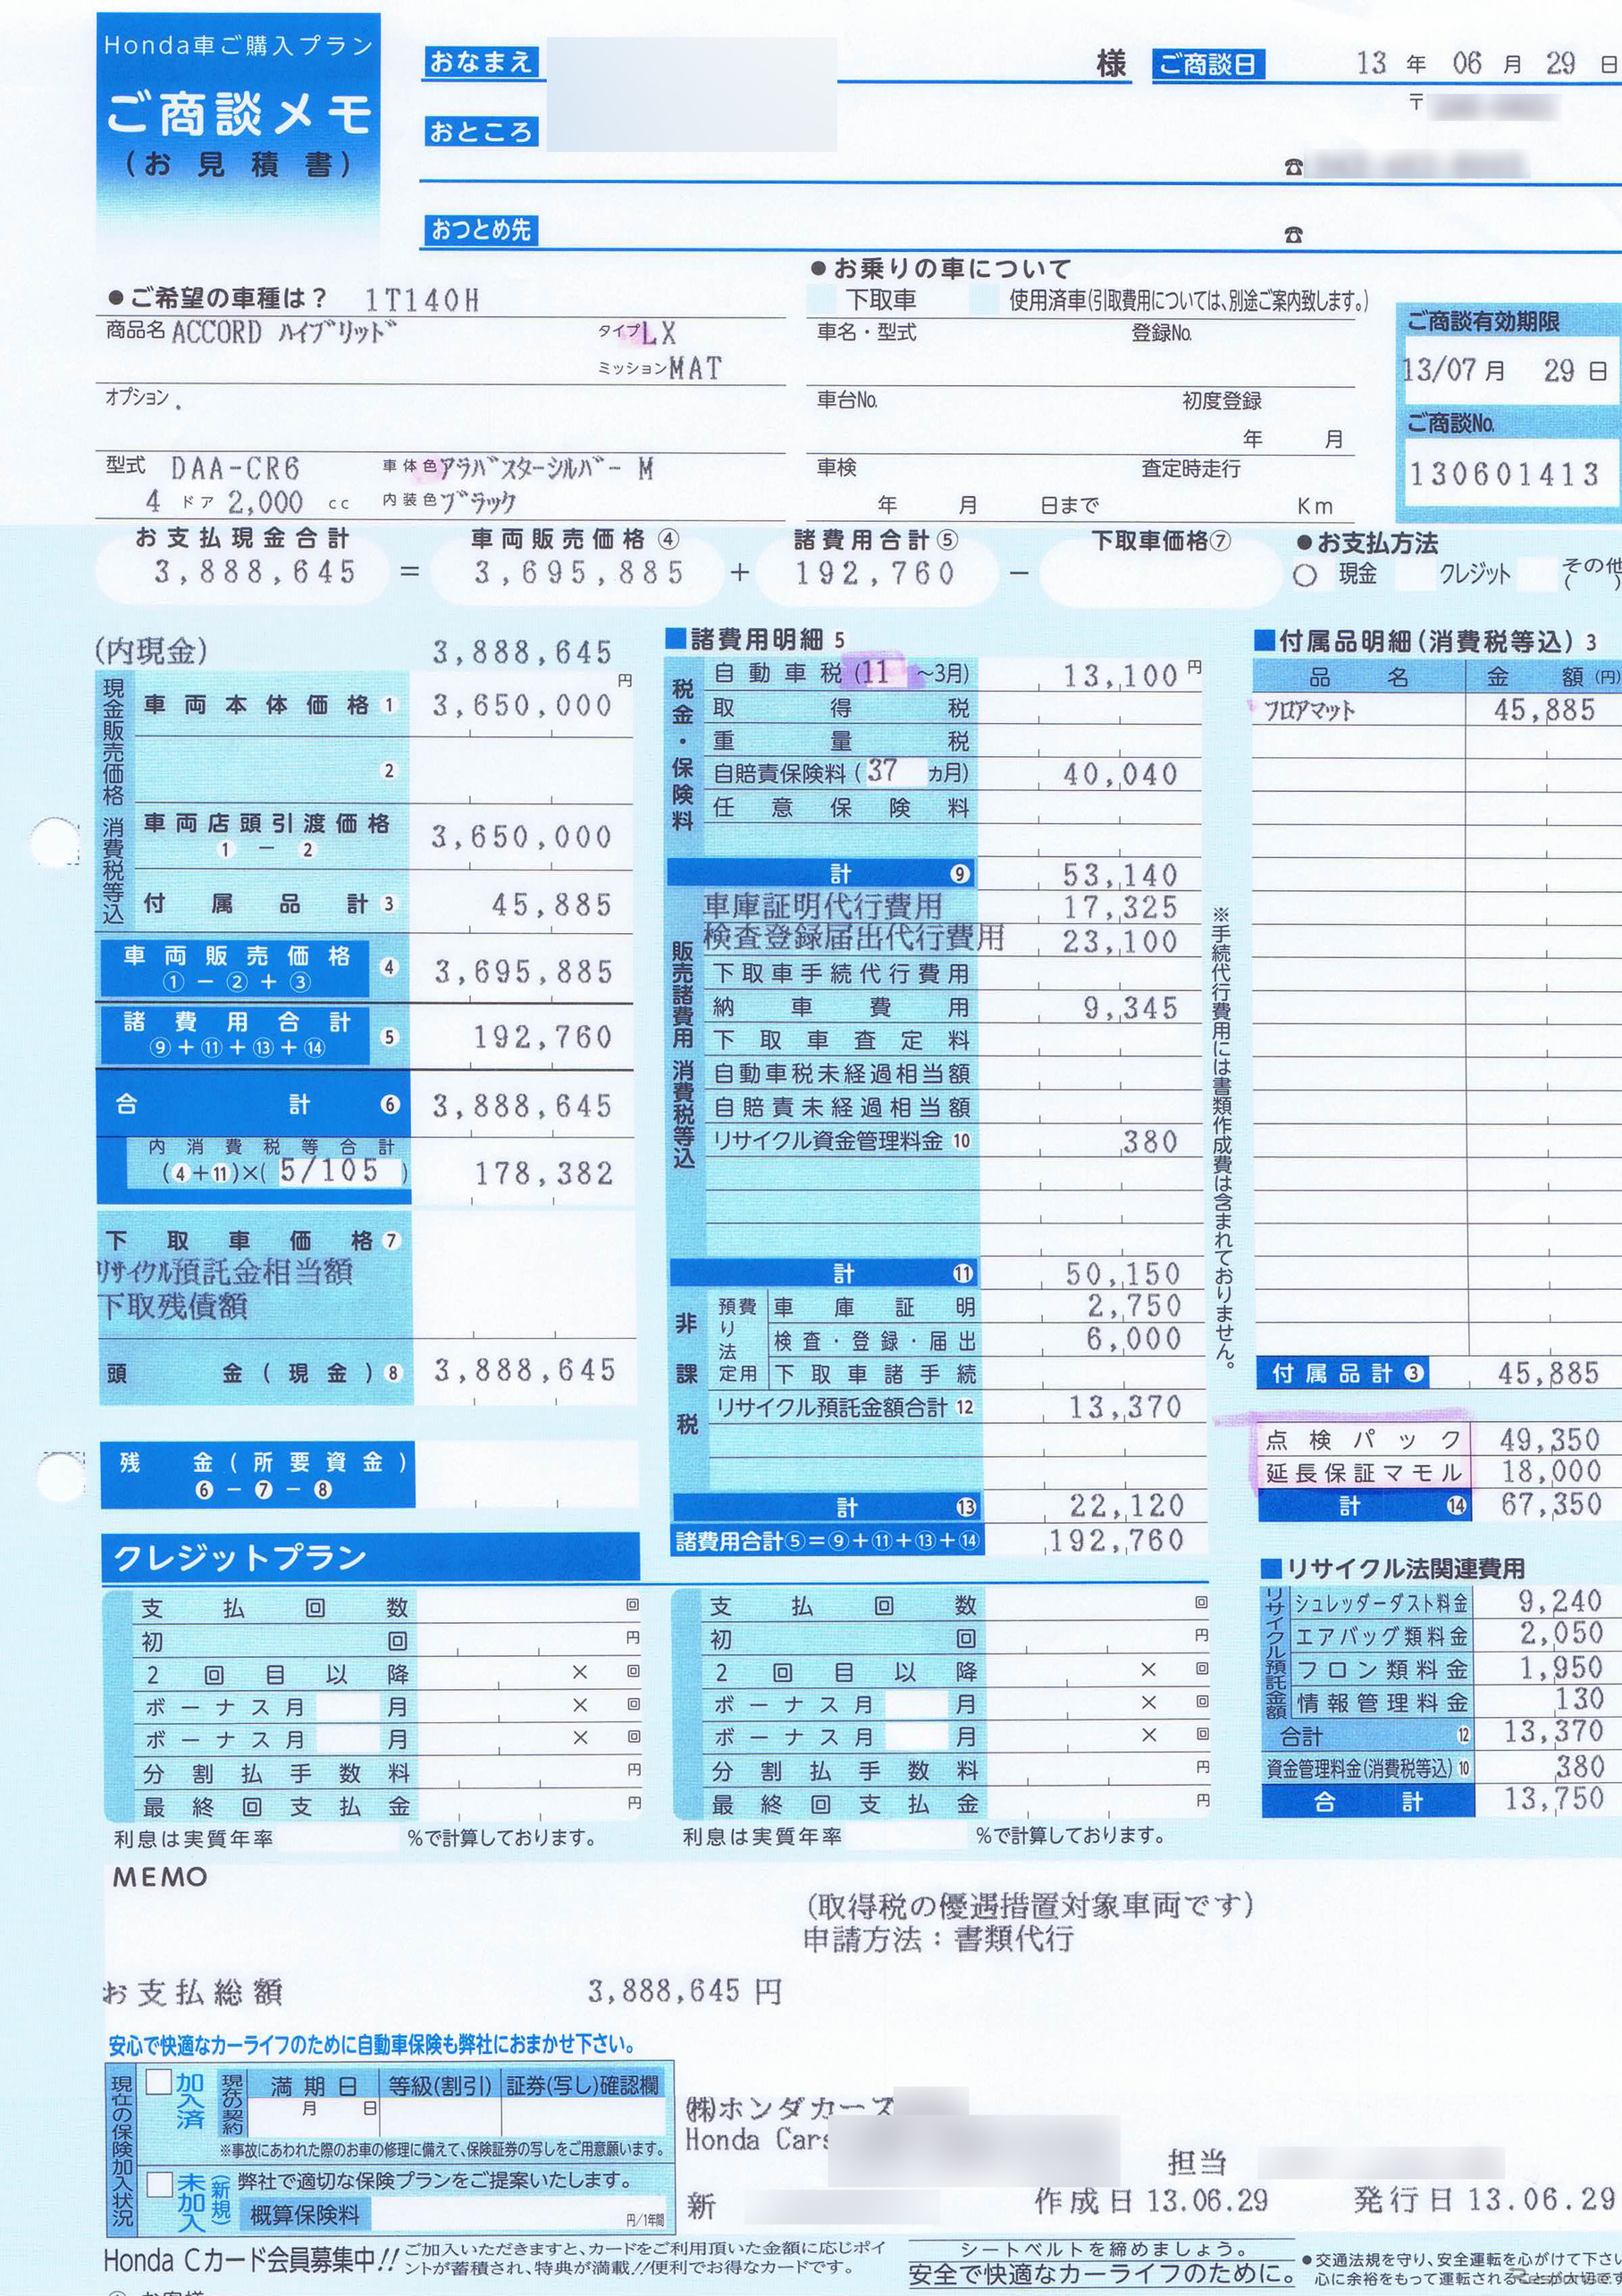 アコード ハイブリッド「LX」の計算書。380万円ちょうどがとりあえずの提示額